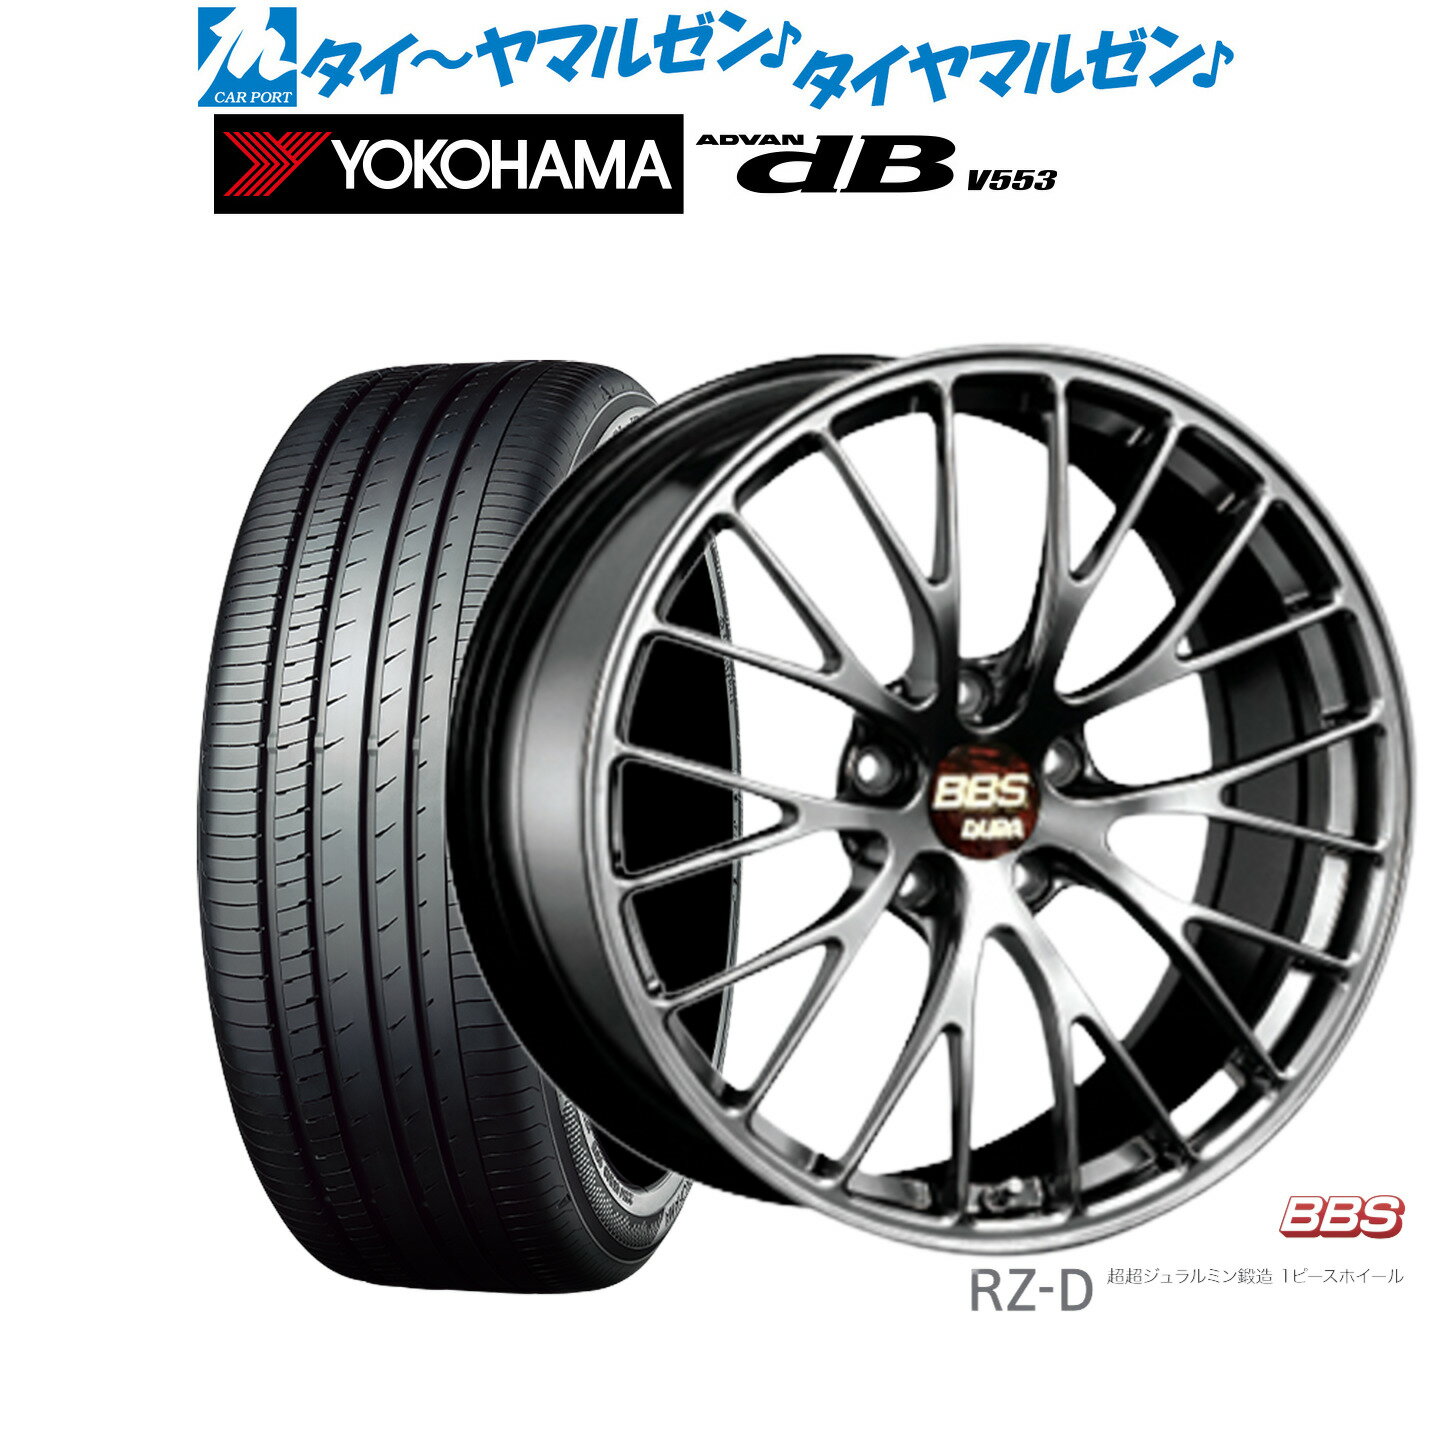 [5/23～26]割引クーポン配布新品 サマータイヤ ホイール4本セットBBS JAPAN RZ-D20インチ 8.5Jヨコハマ ADVAN アドバン dB(V553)245/40R20